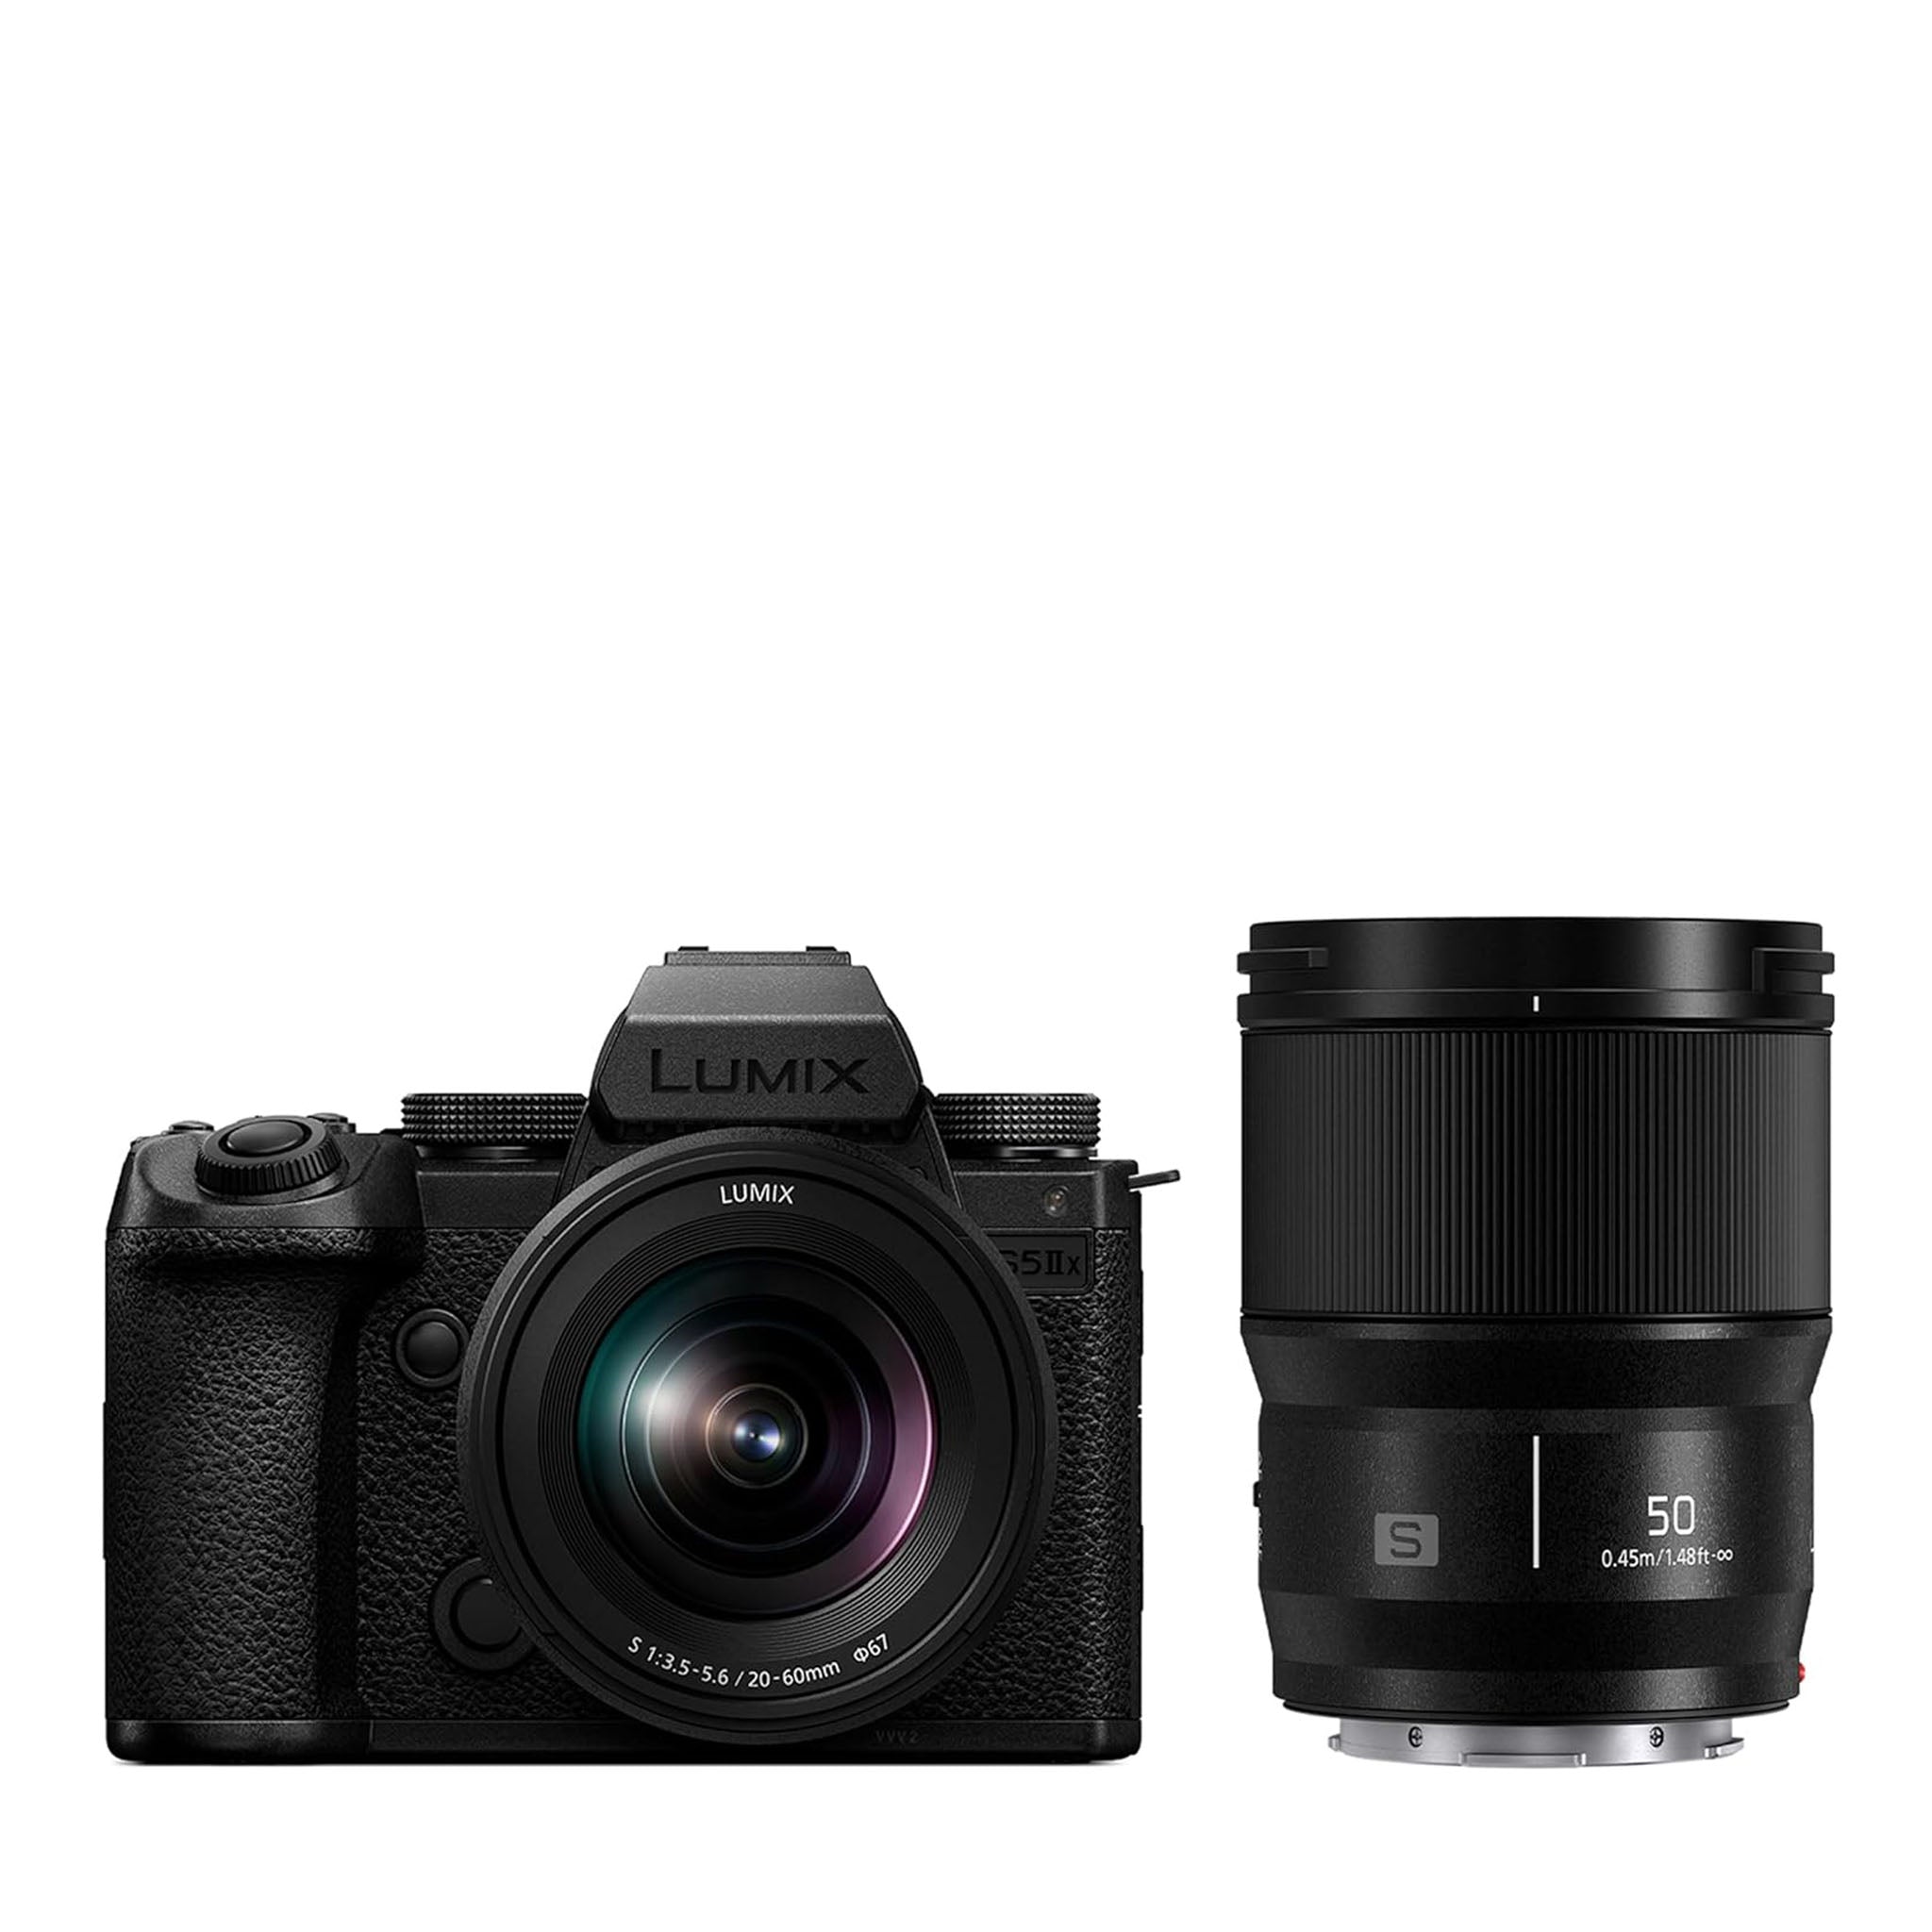 S5M2X Full Frame Mirrorless Camera + 20-60mm F3.5-5.6 Lens + 50mm F1.8 Lens